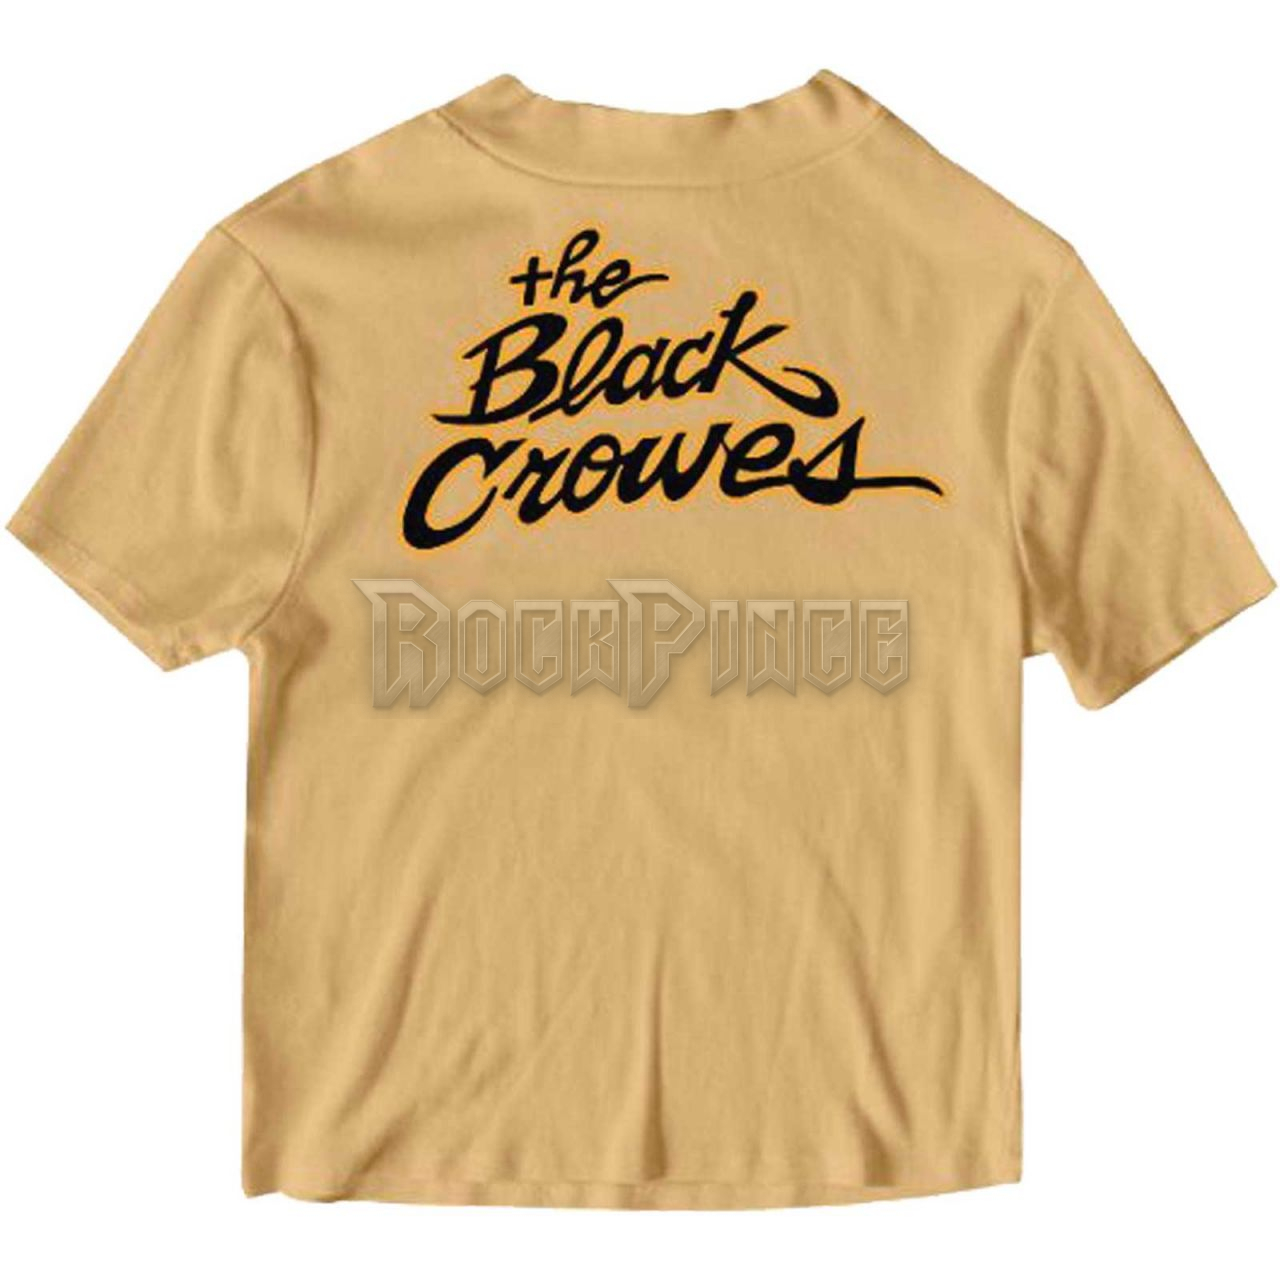 The Black Crowes - Crowe Mafia - unisex póló - BCROWTS03MS